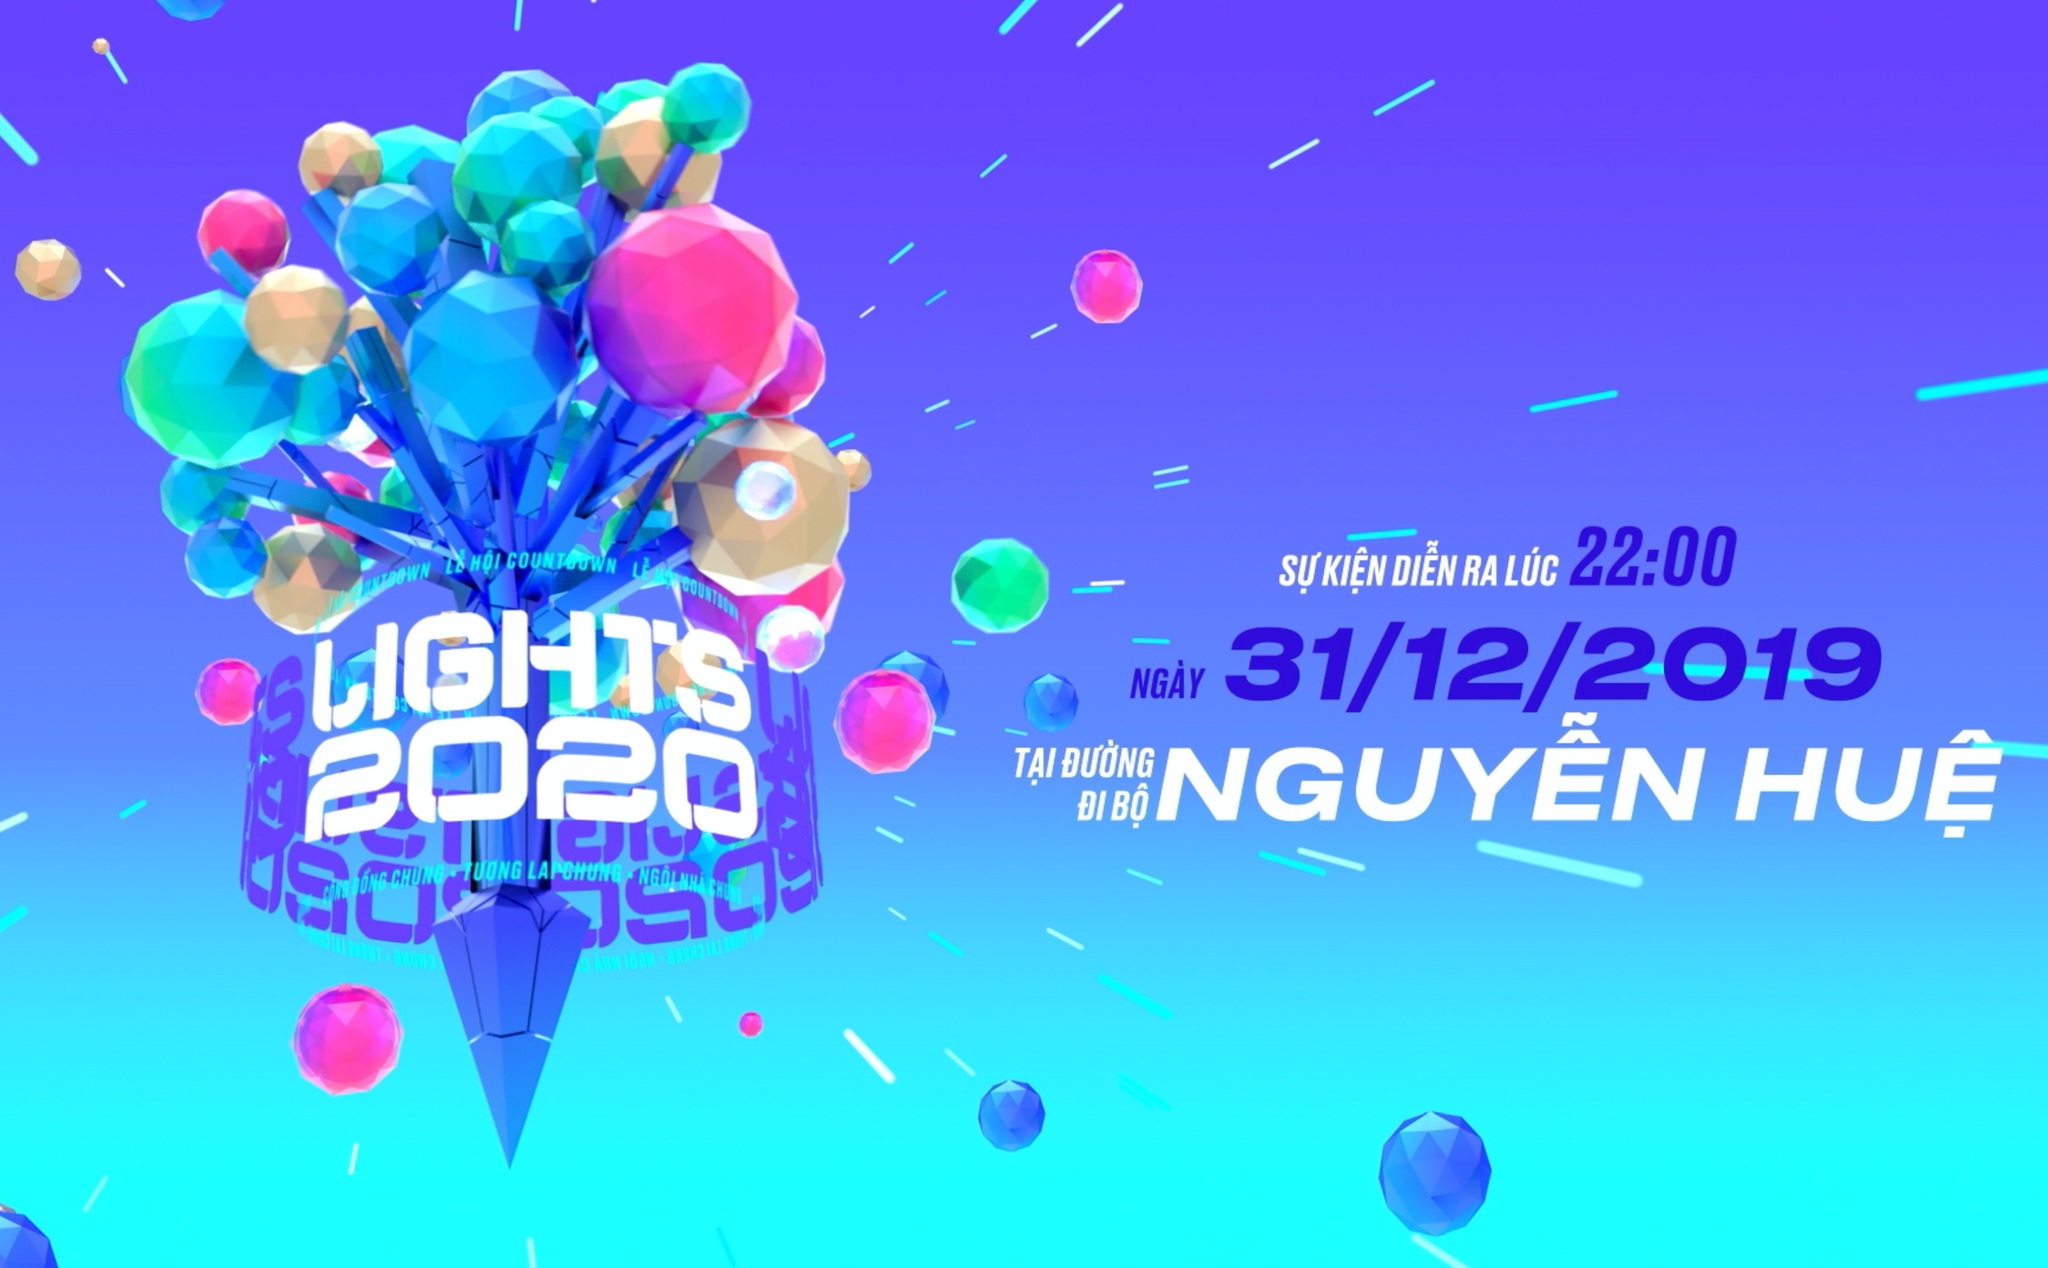 Đêm giao thừa 31/12/19 có lễ hội Countdown Light 2020 tại phố đi bộ Nguyễn Huệ, mời anh em đến chơi